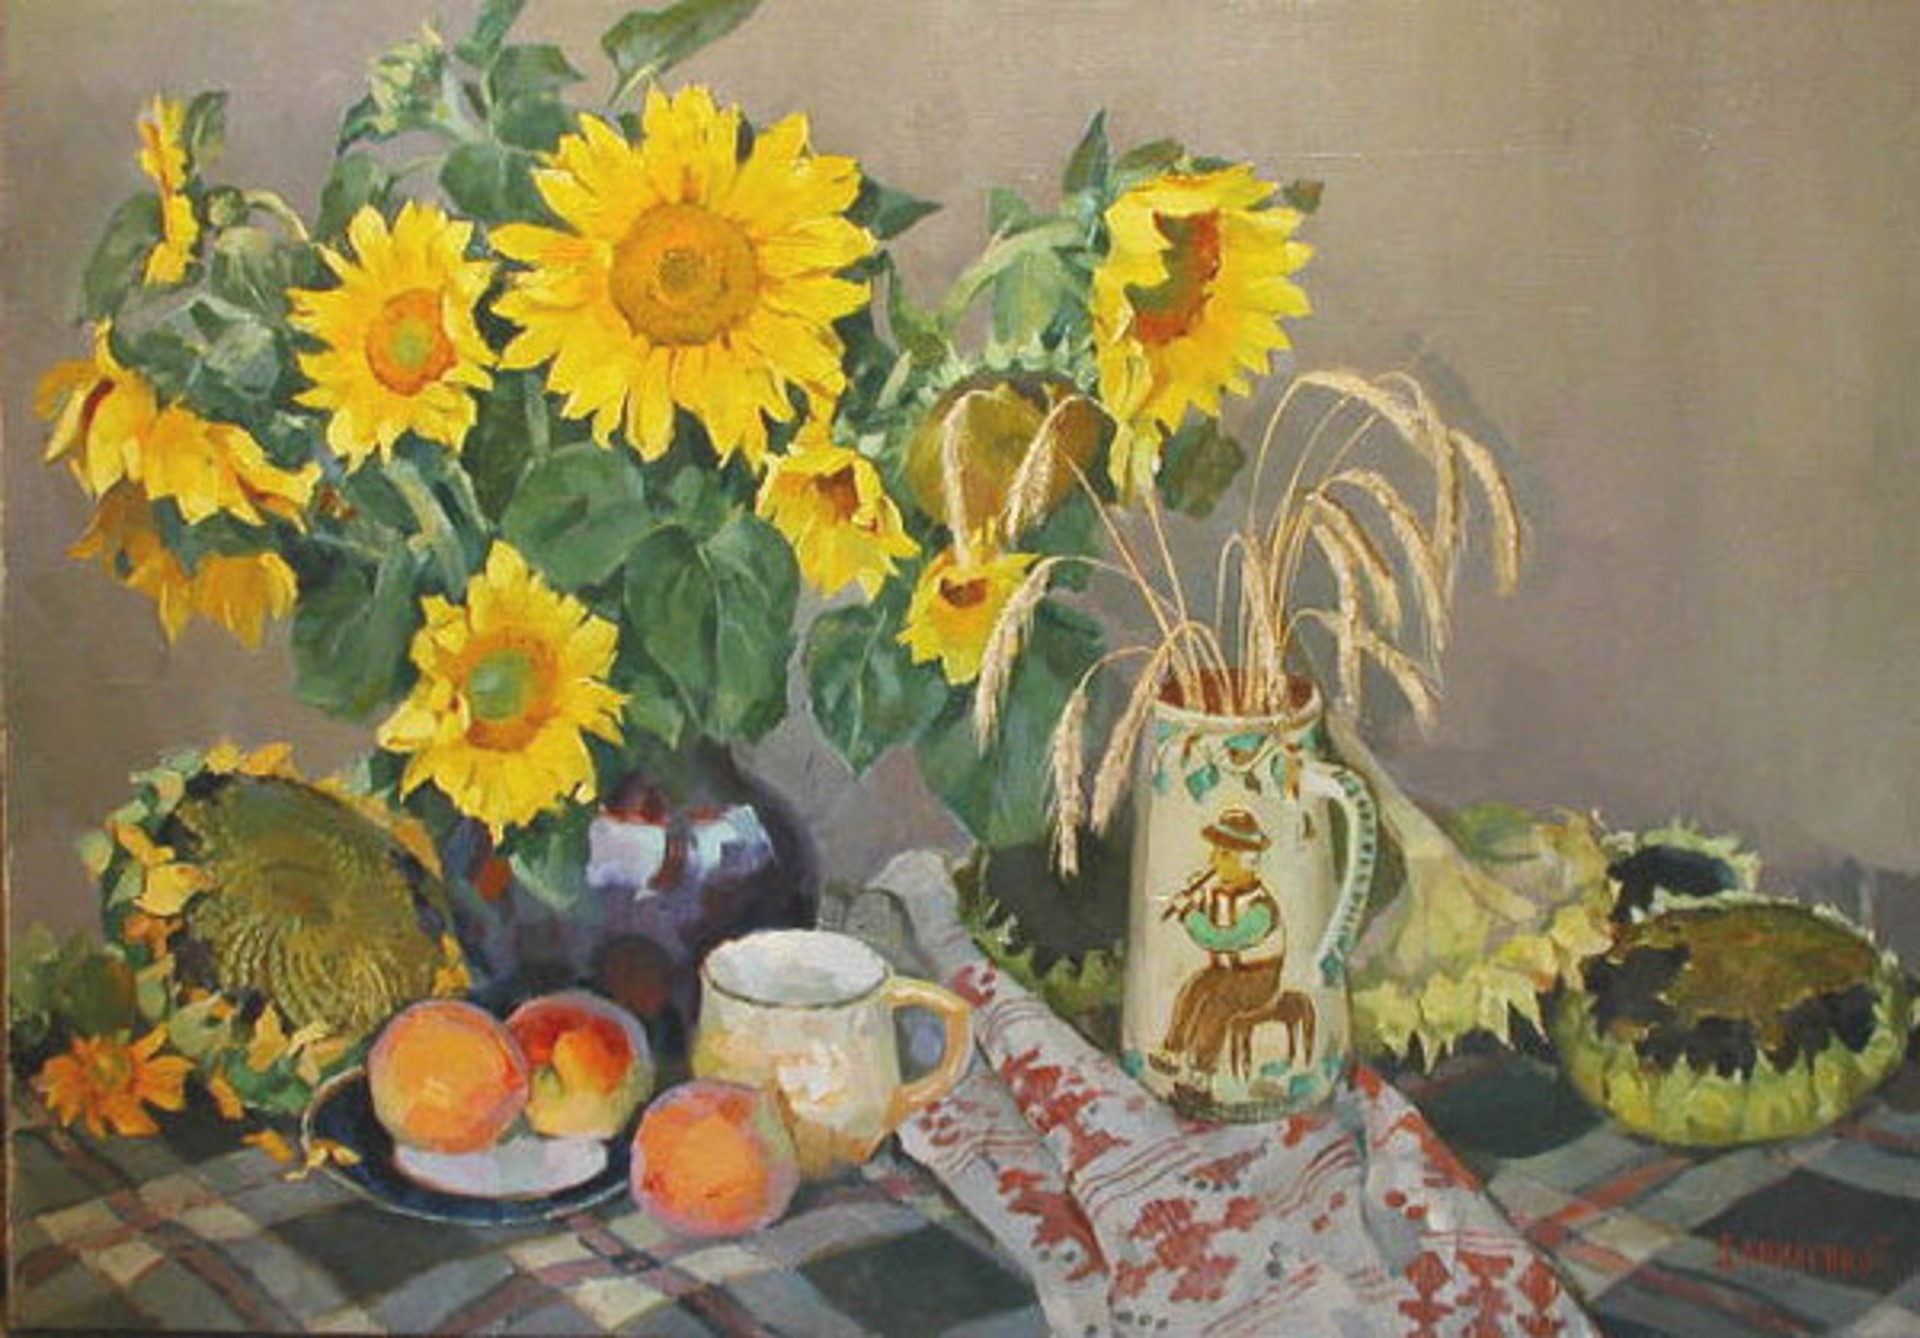 Sunflowers with Peaches by Tamara Danilenko